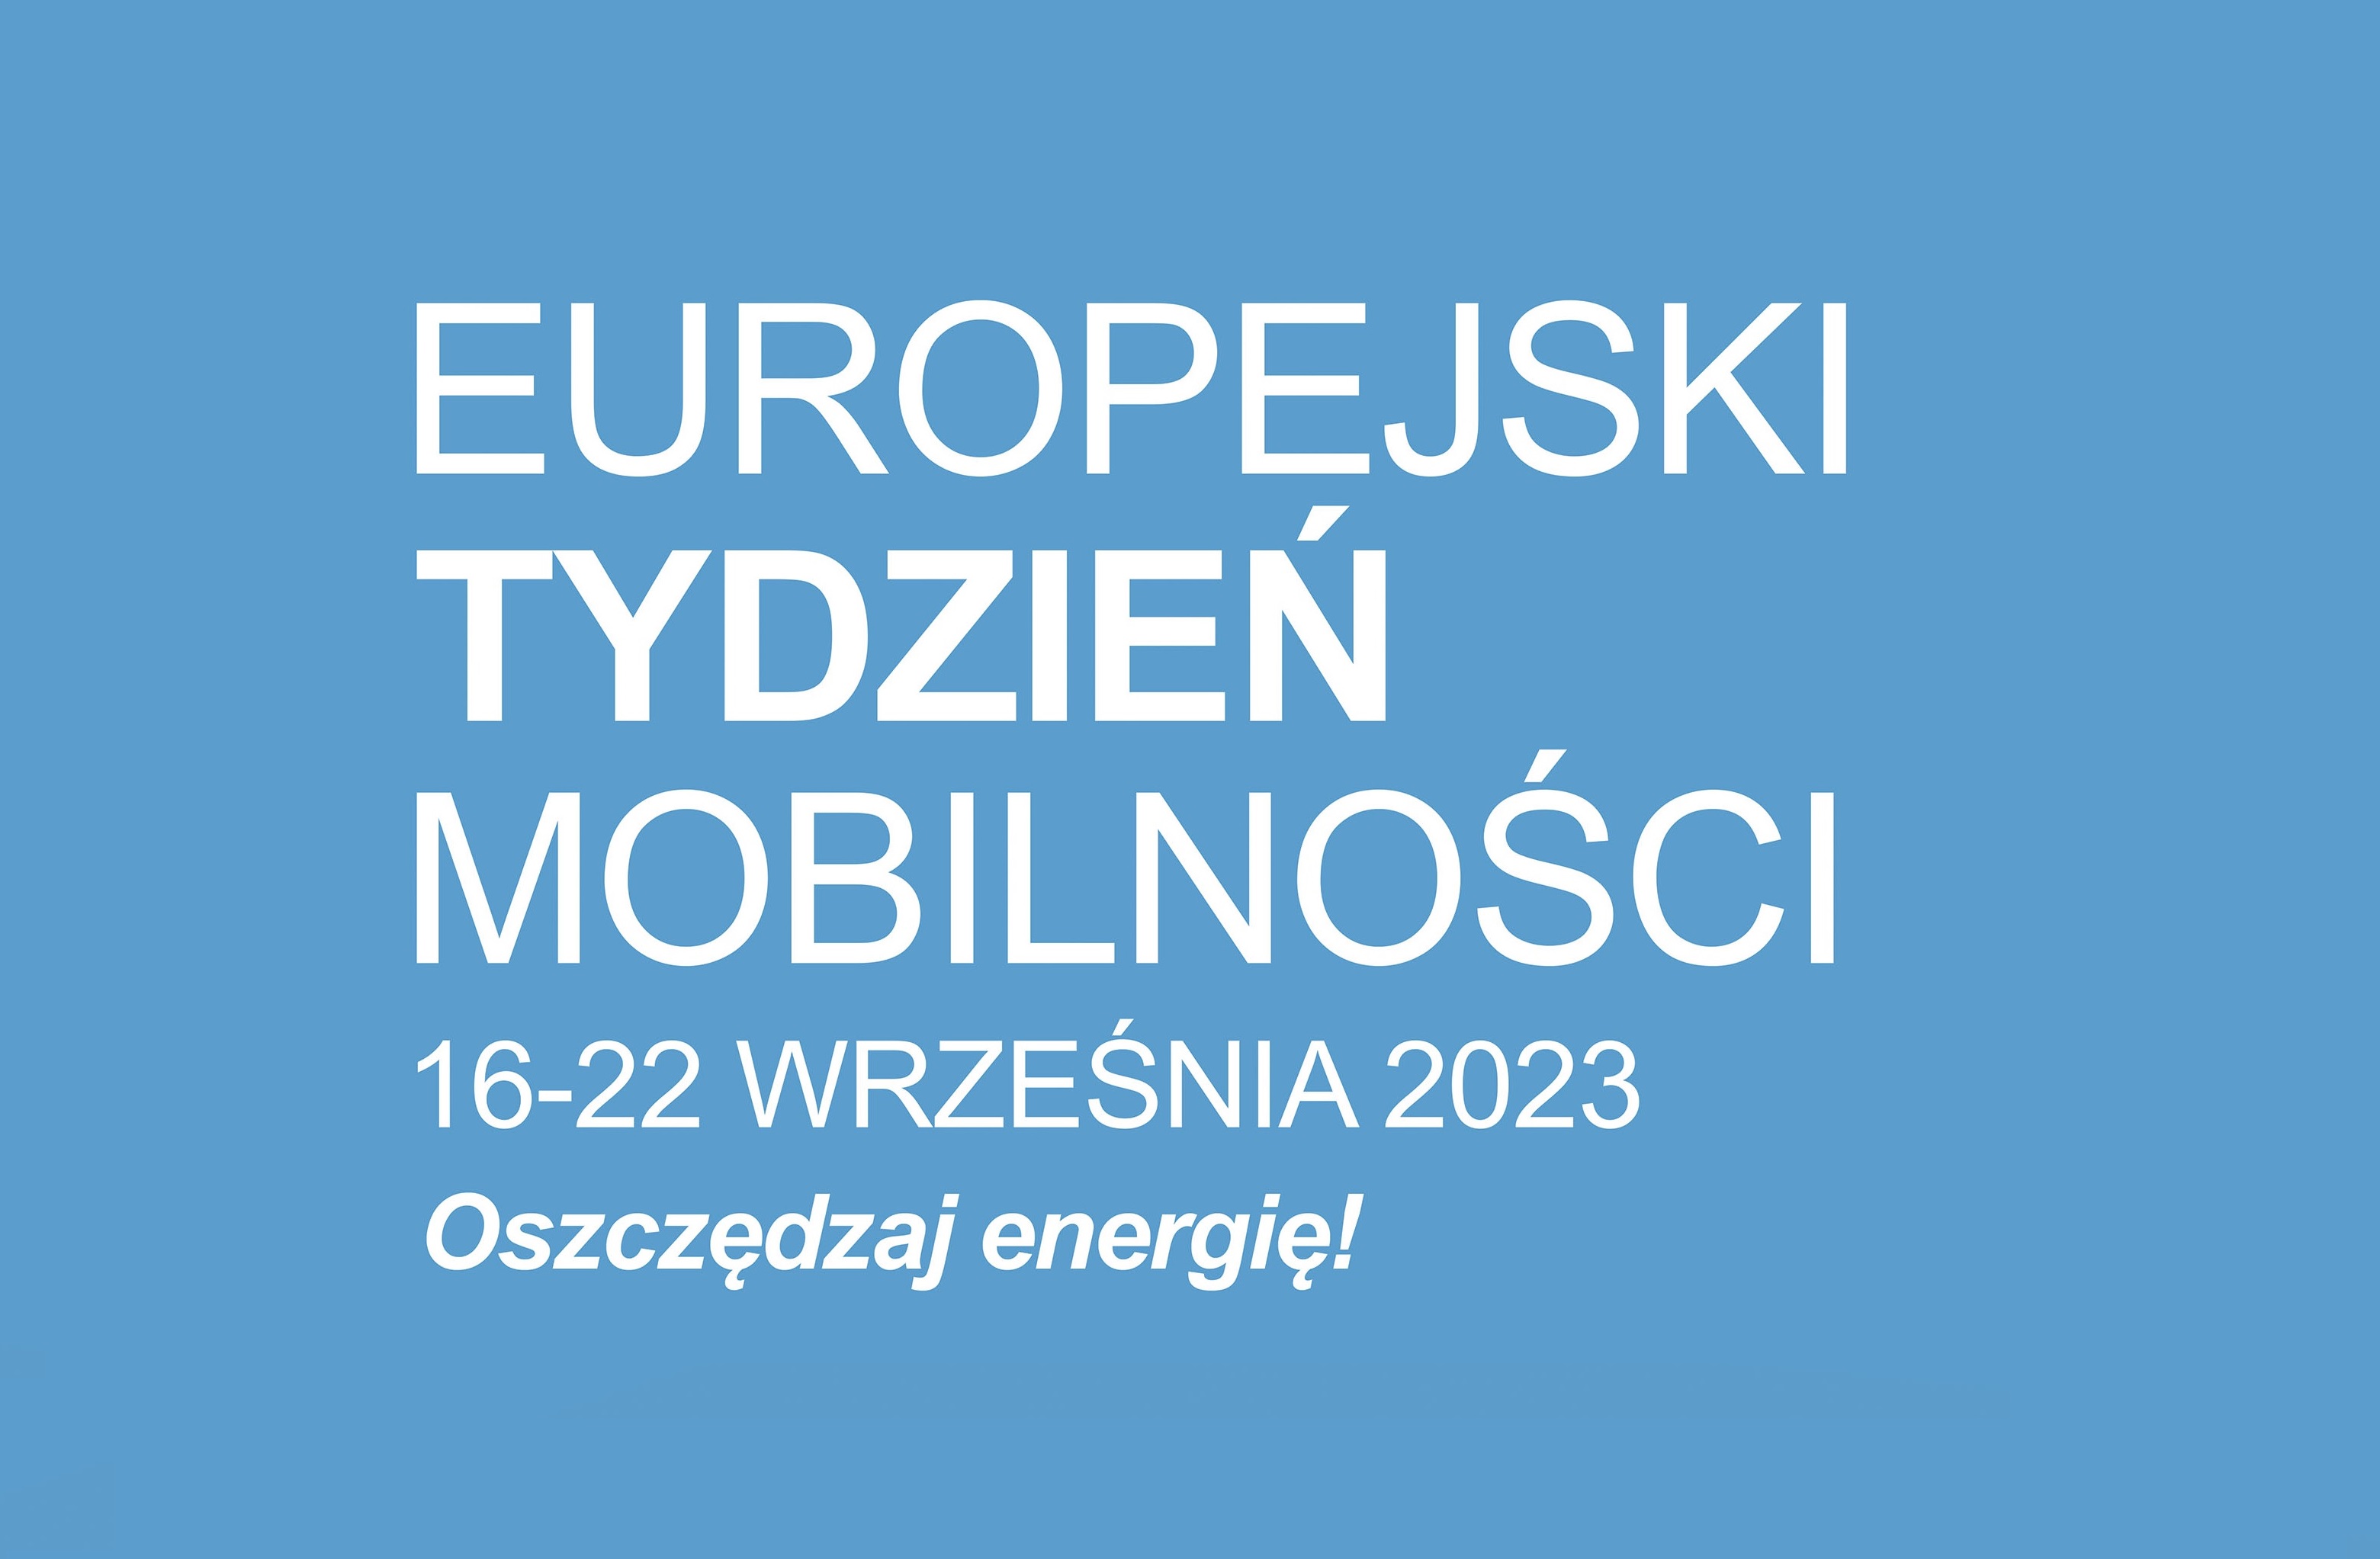 Europejski Tydzień Mobilności - 16-22 wrzesnia, Oszczędzaj energię